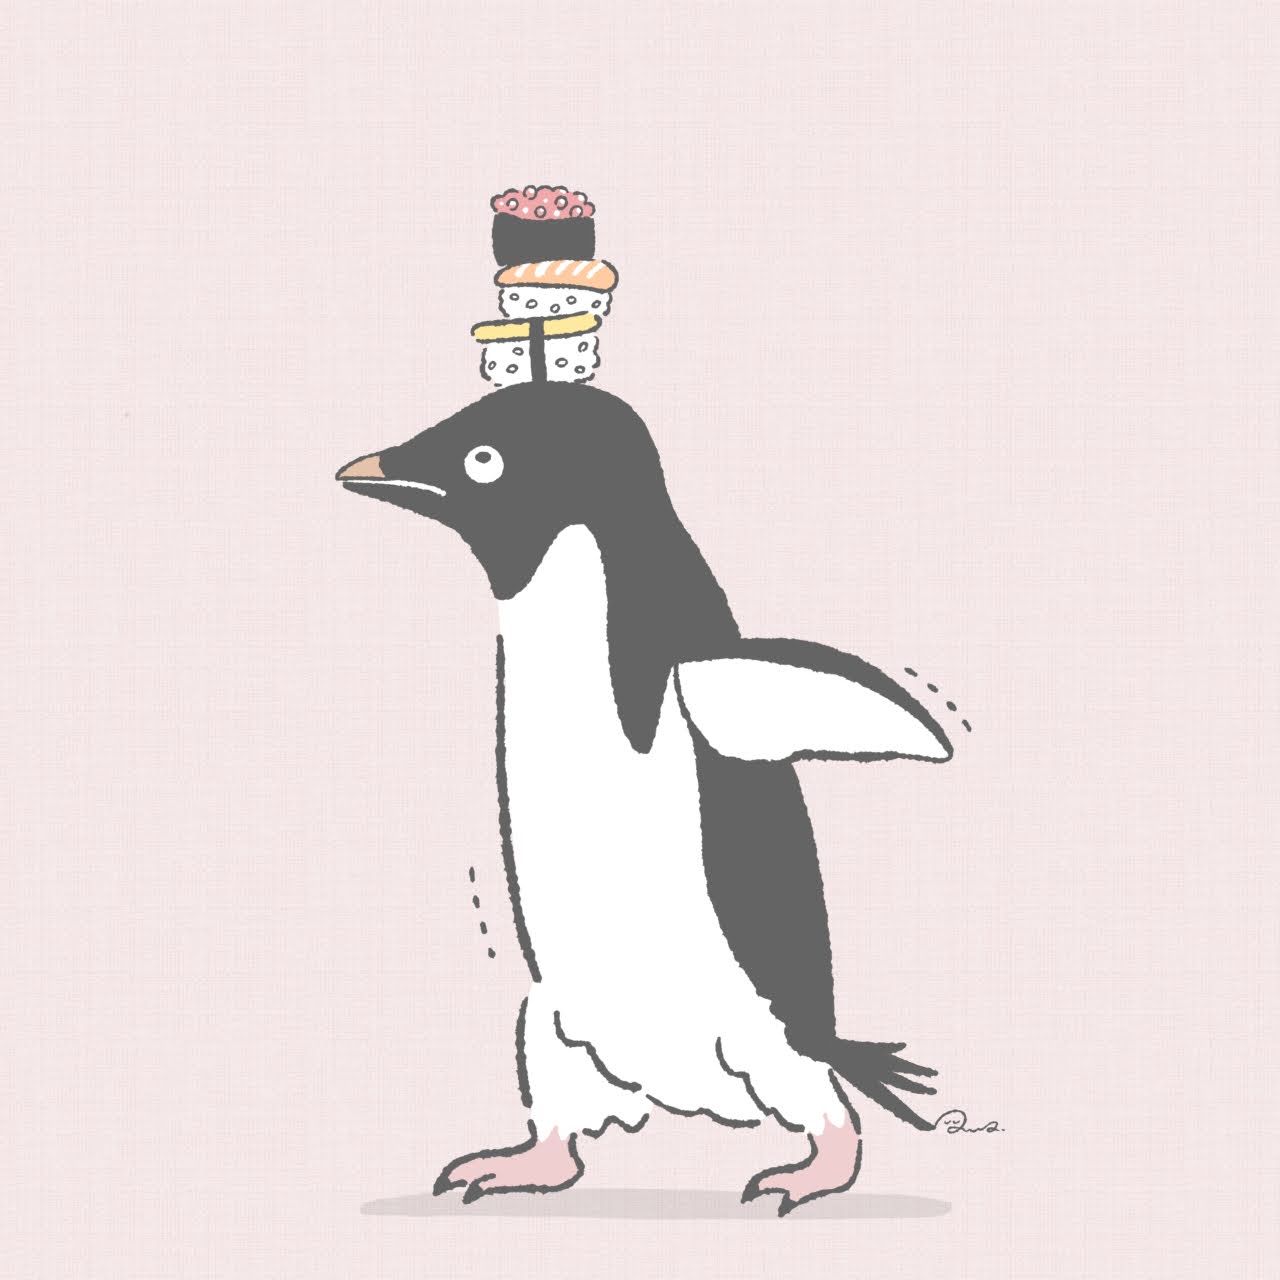 Go penguin!